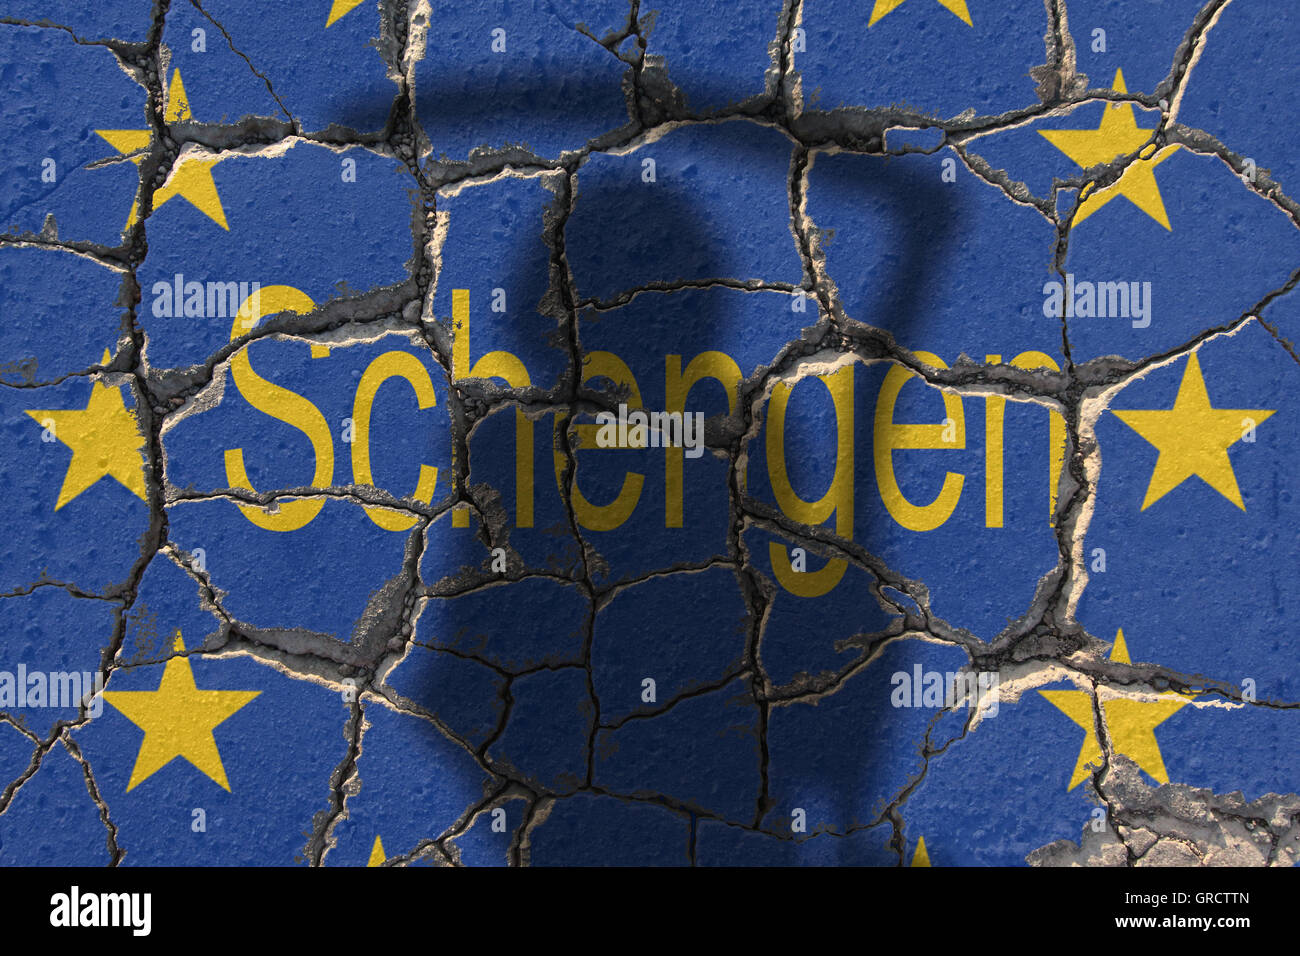 EU-Krise mit erodieren Wort Schengen und EU-Flagge Stockfoto